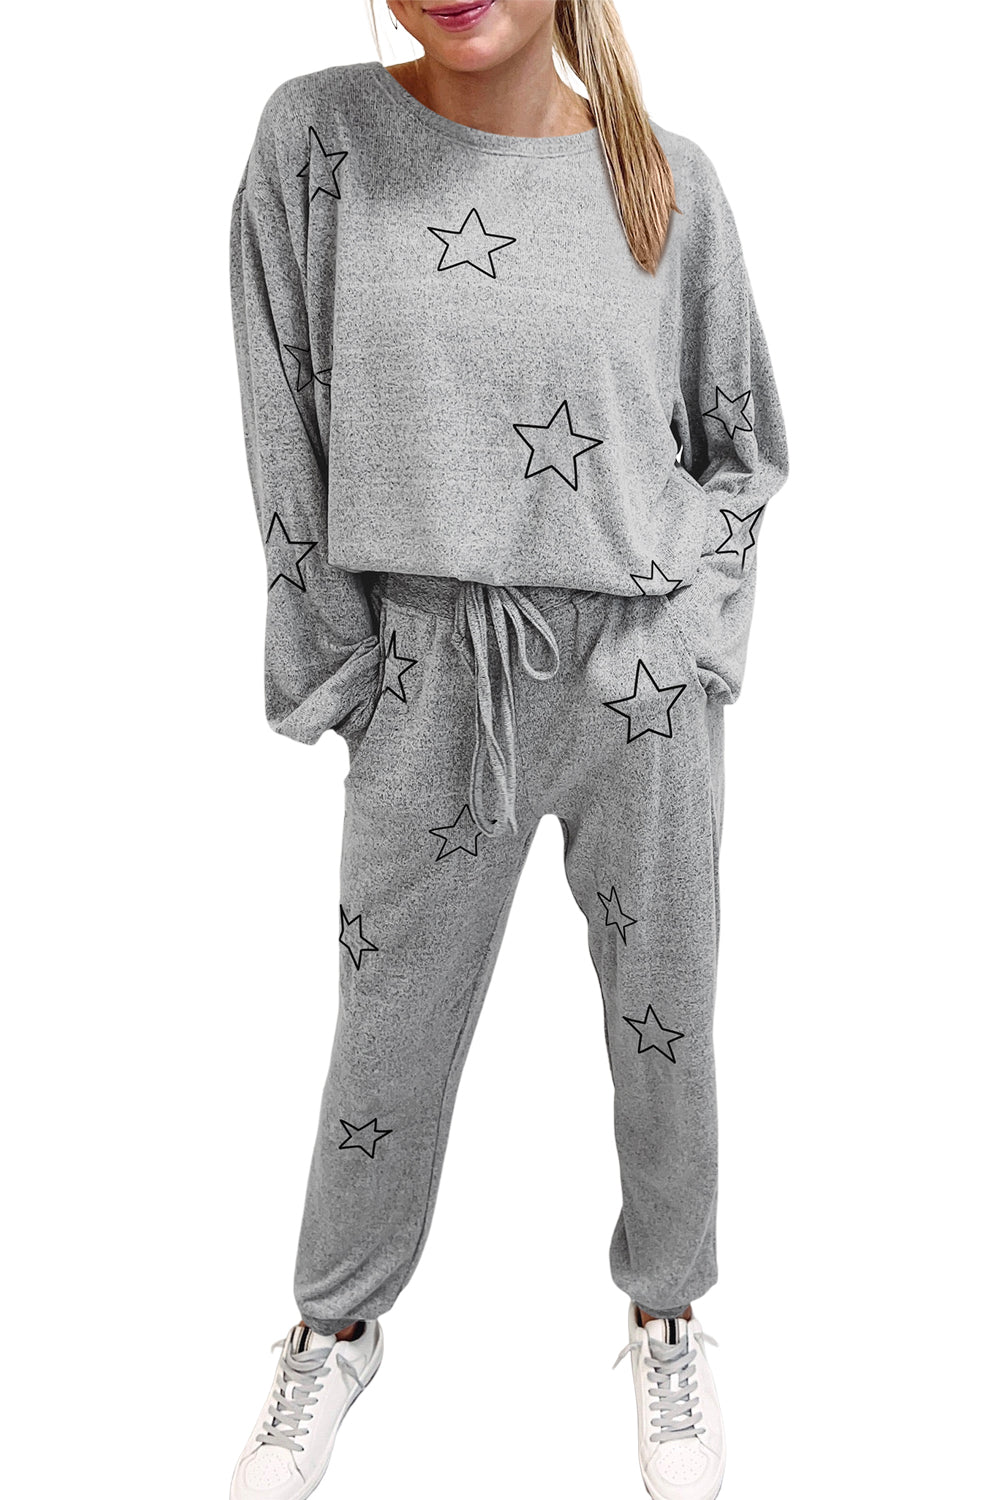 Gray Stars Print Long Sleeve Top and Drawstring Pants Set